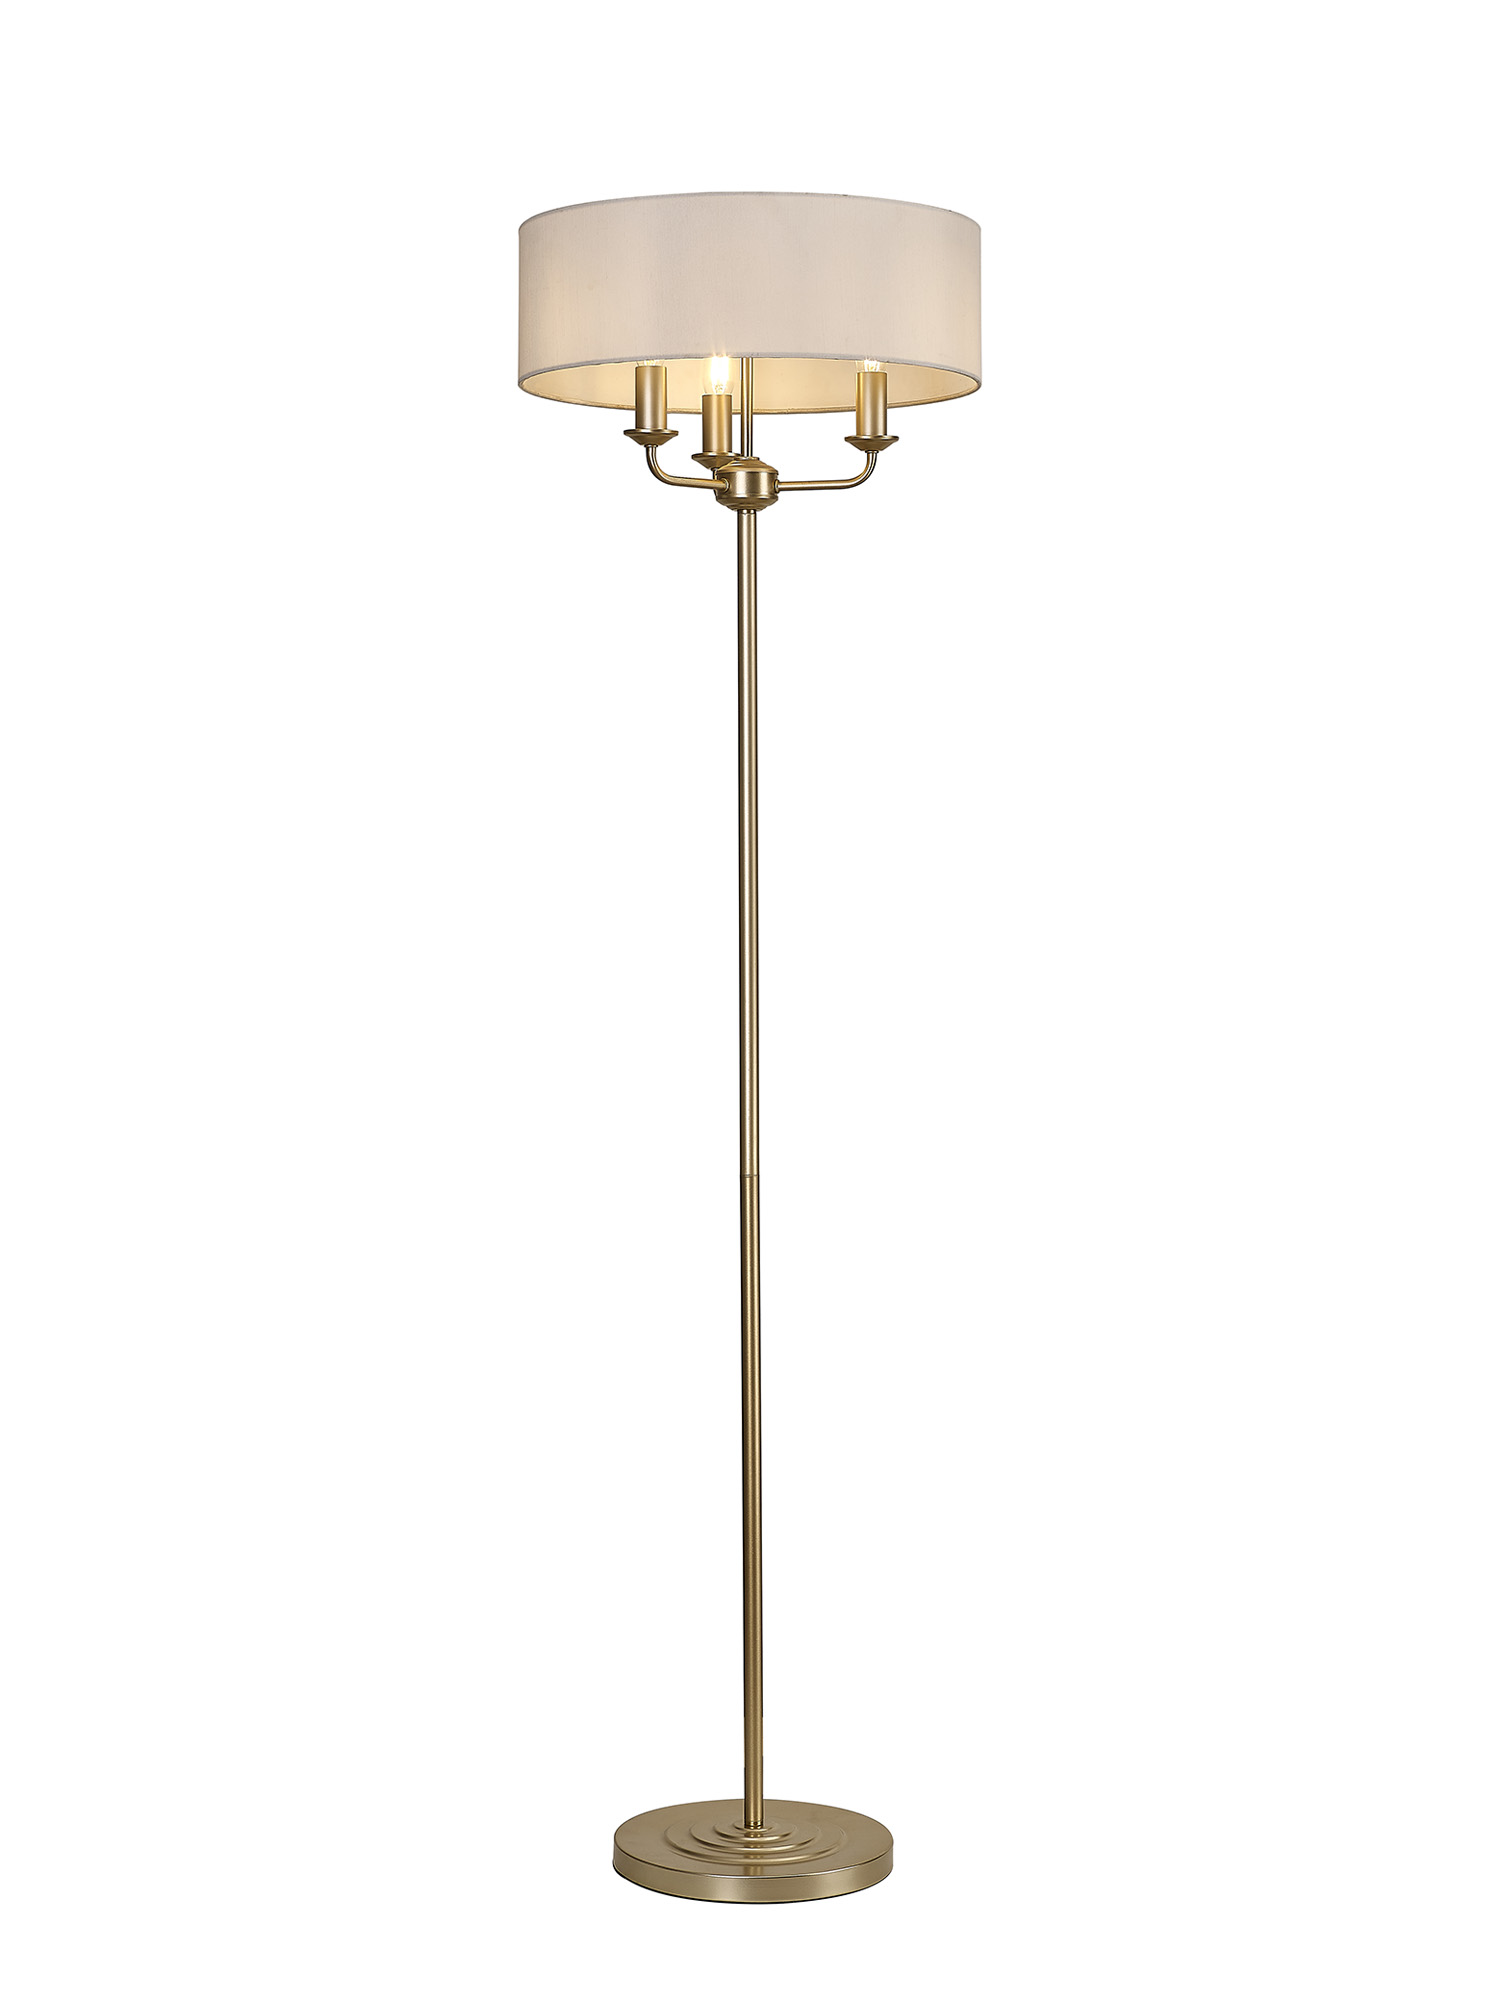 DK0987  Banyan 45cm 3 Light Floor Lamp Champagne Gold, White